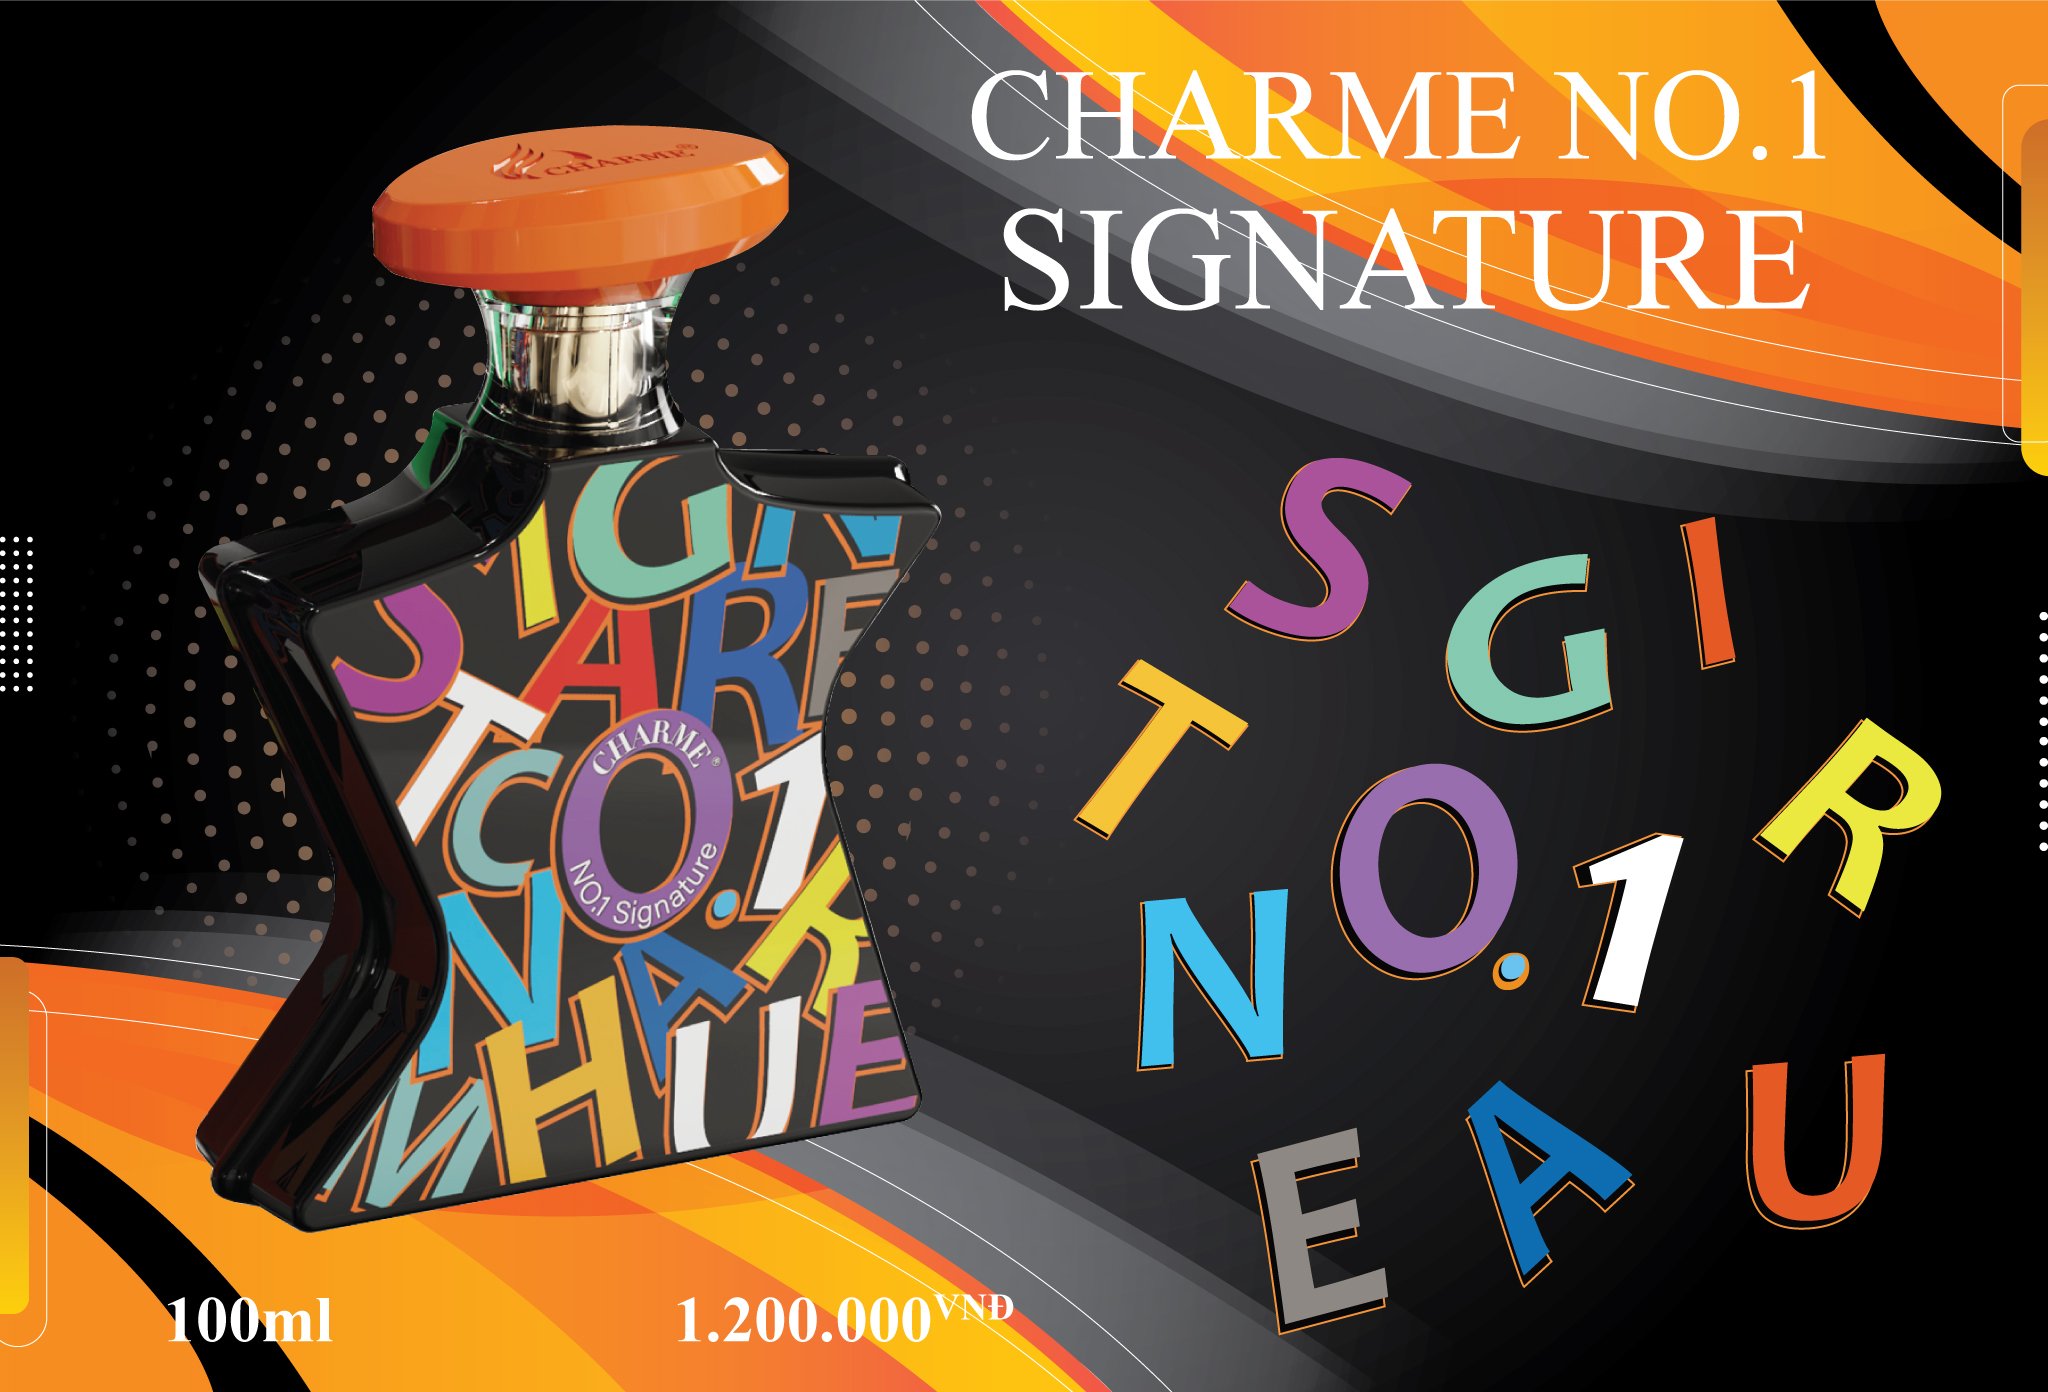 Nước hoa Charme No.1 Signature chính hãng